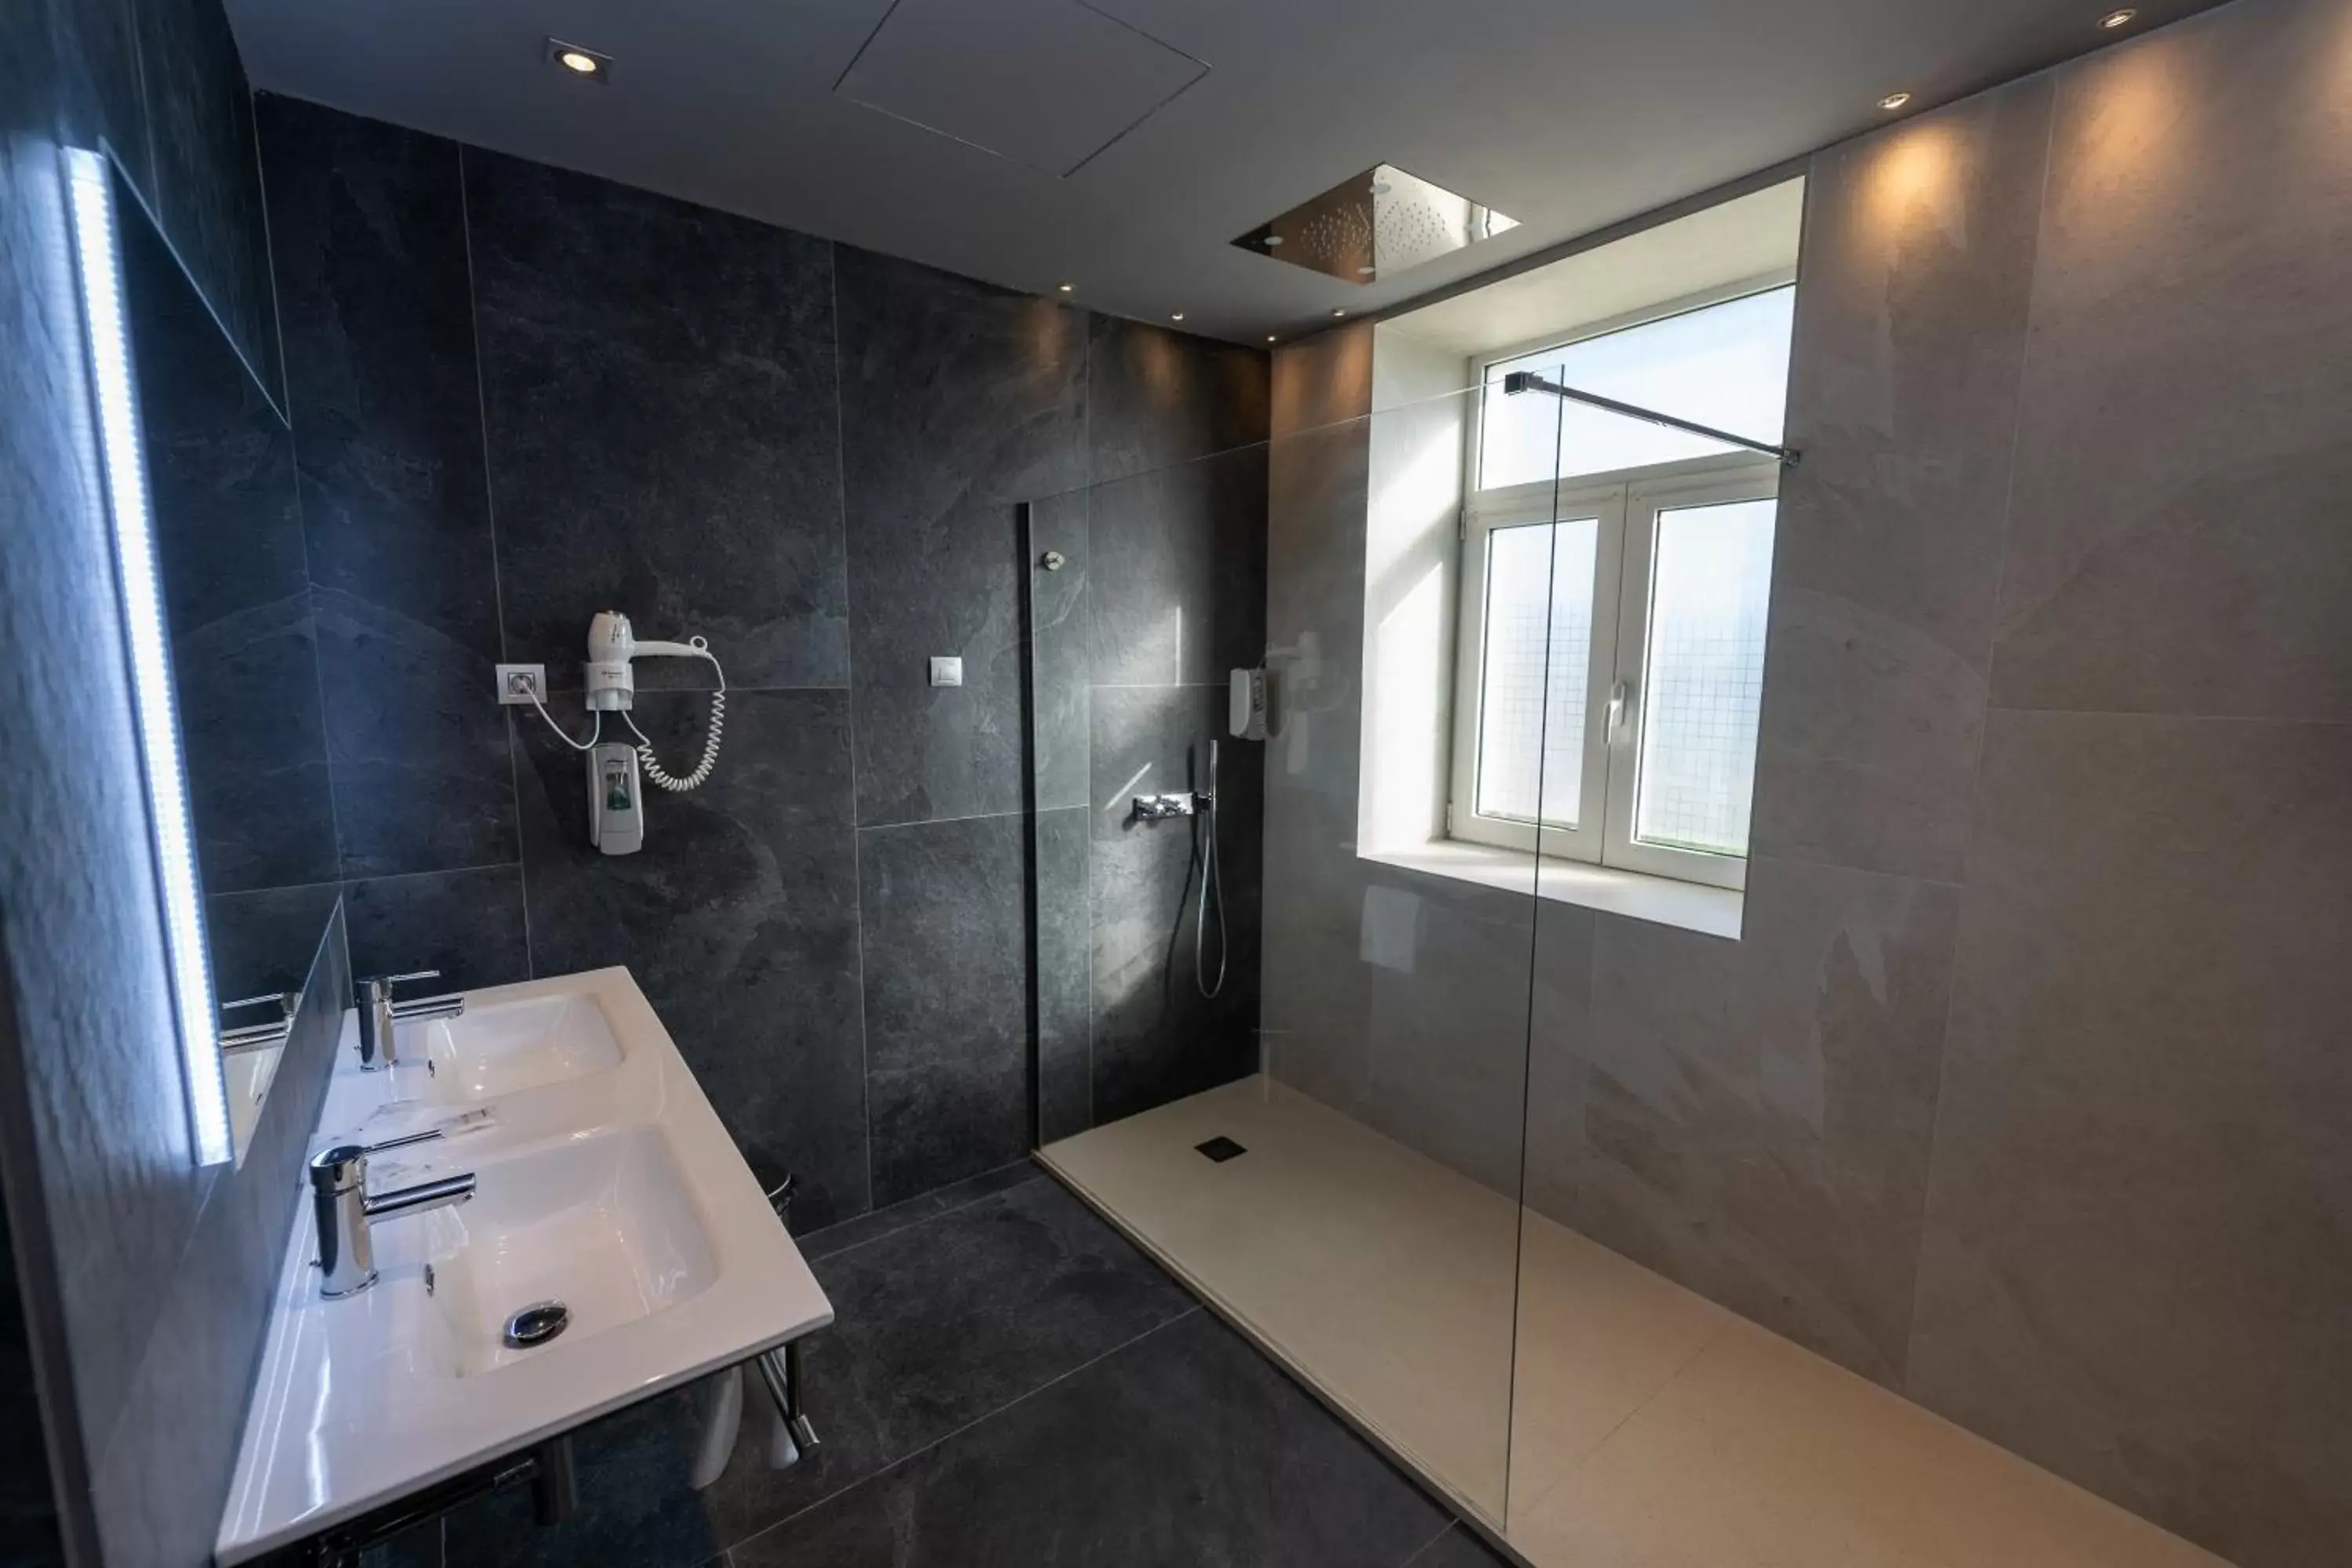 Bathroom in Hotel Seminario Aeropuerto Bilbao